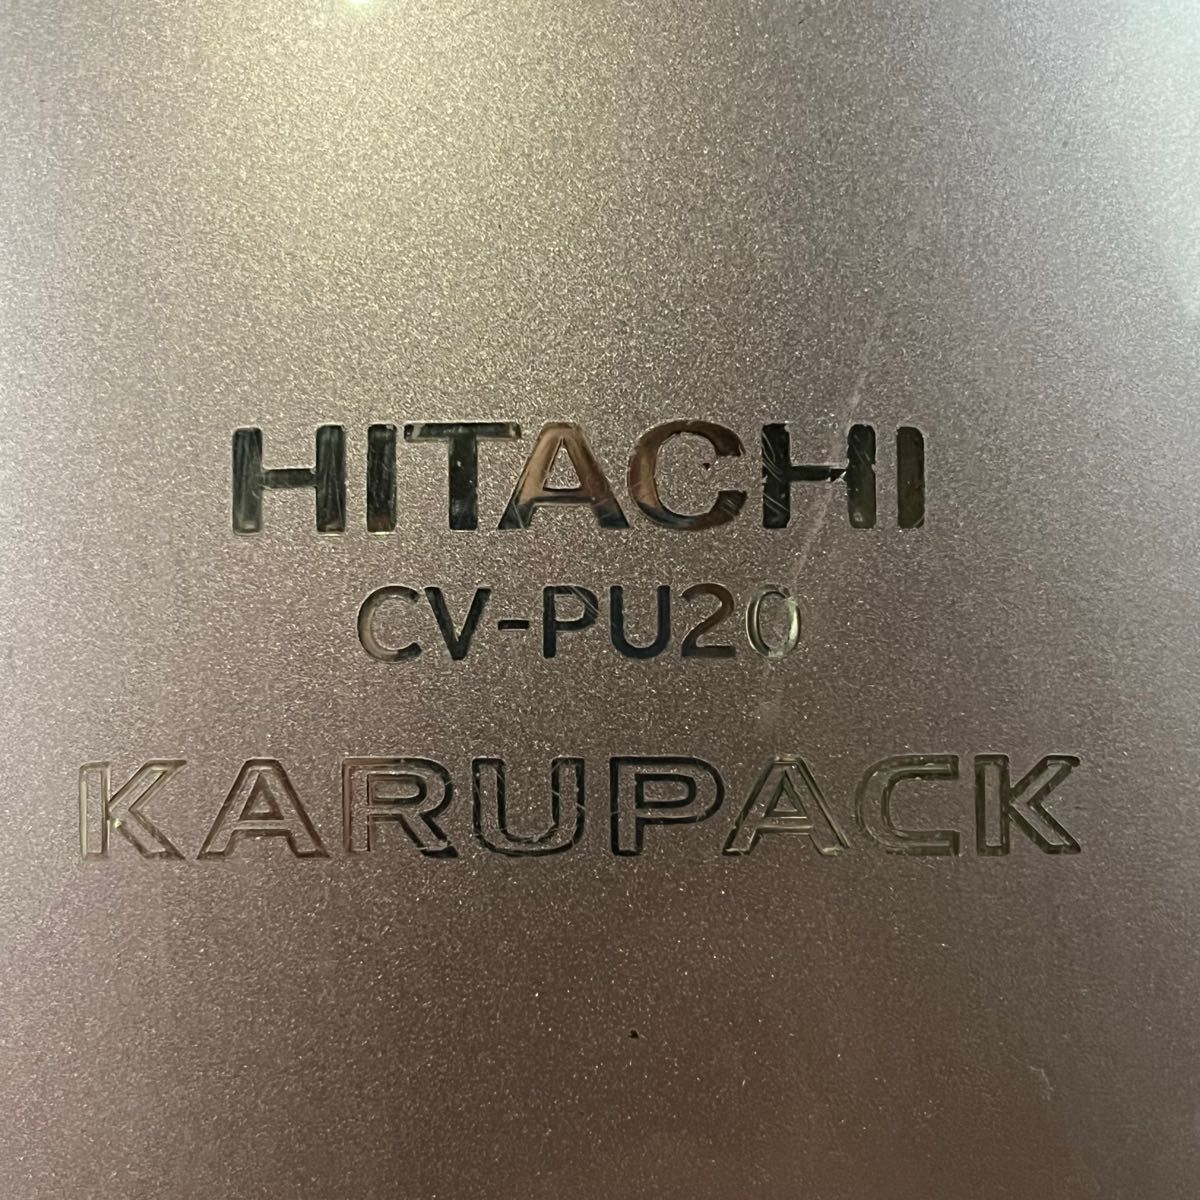 【ジャンク】HITACHI CV-PU20 日立 掃除機 故障品 動きません